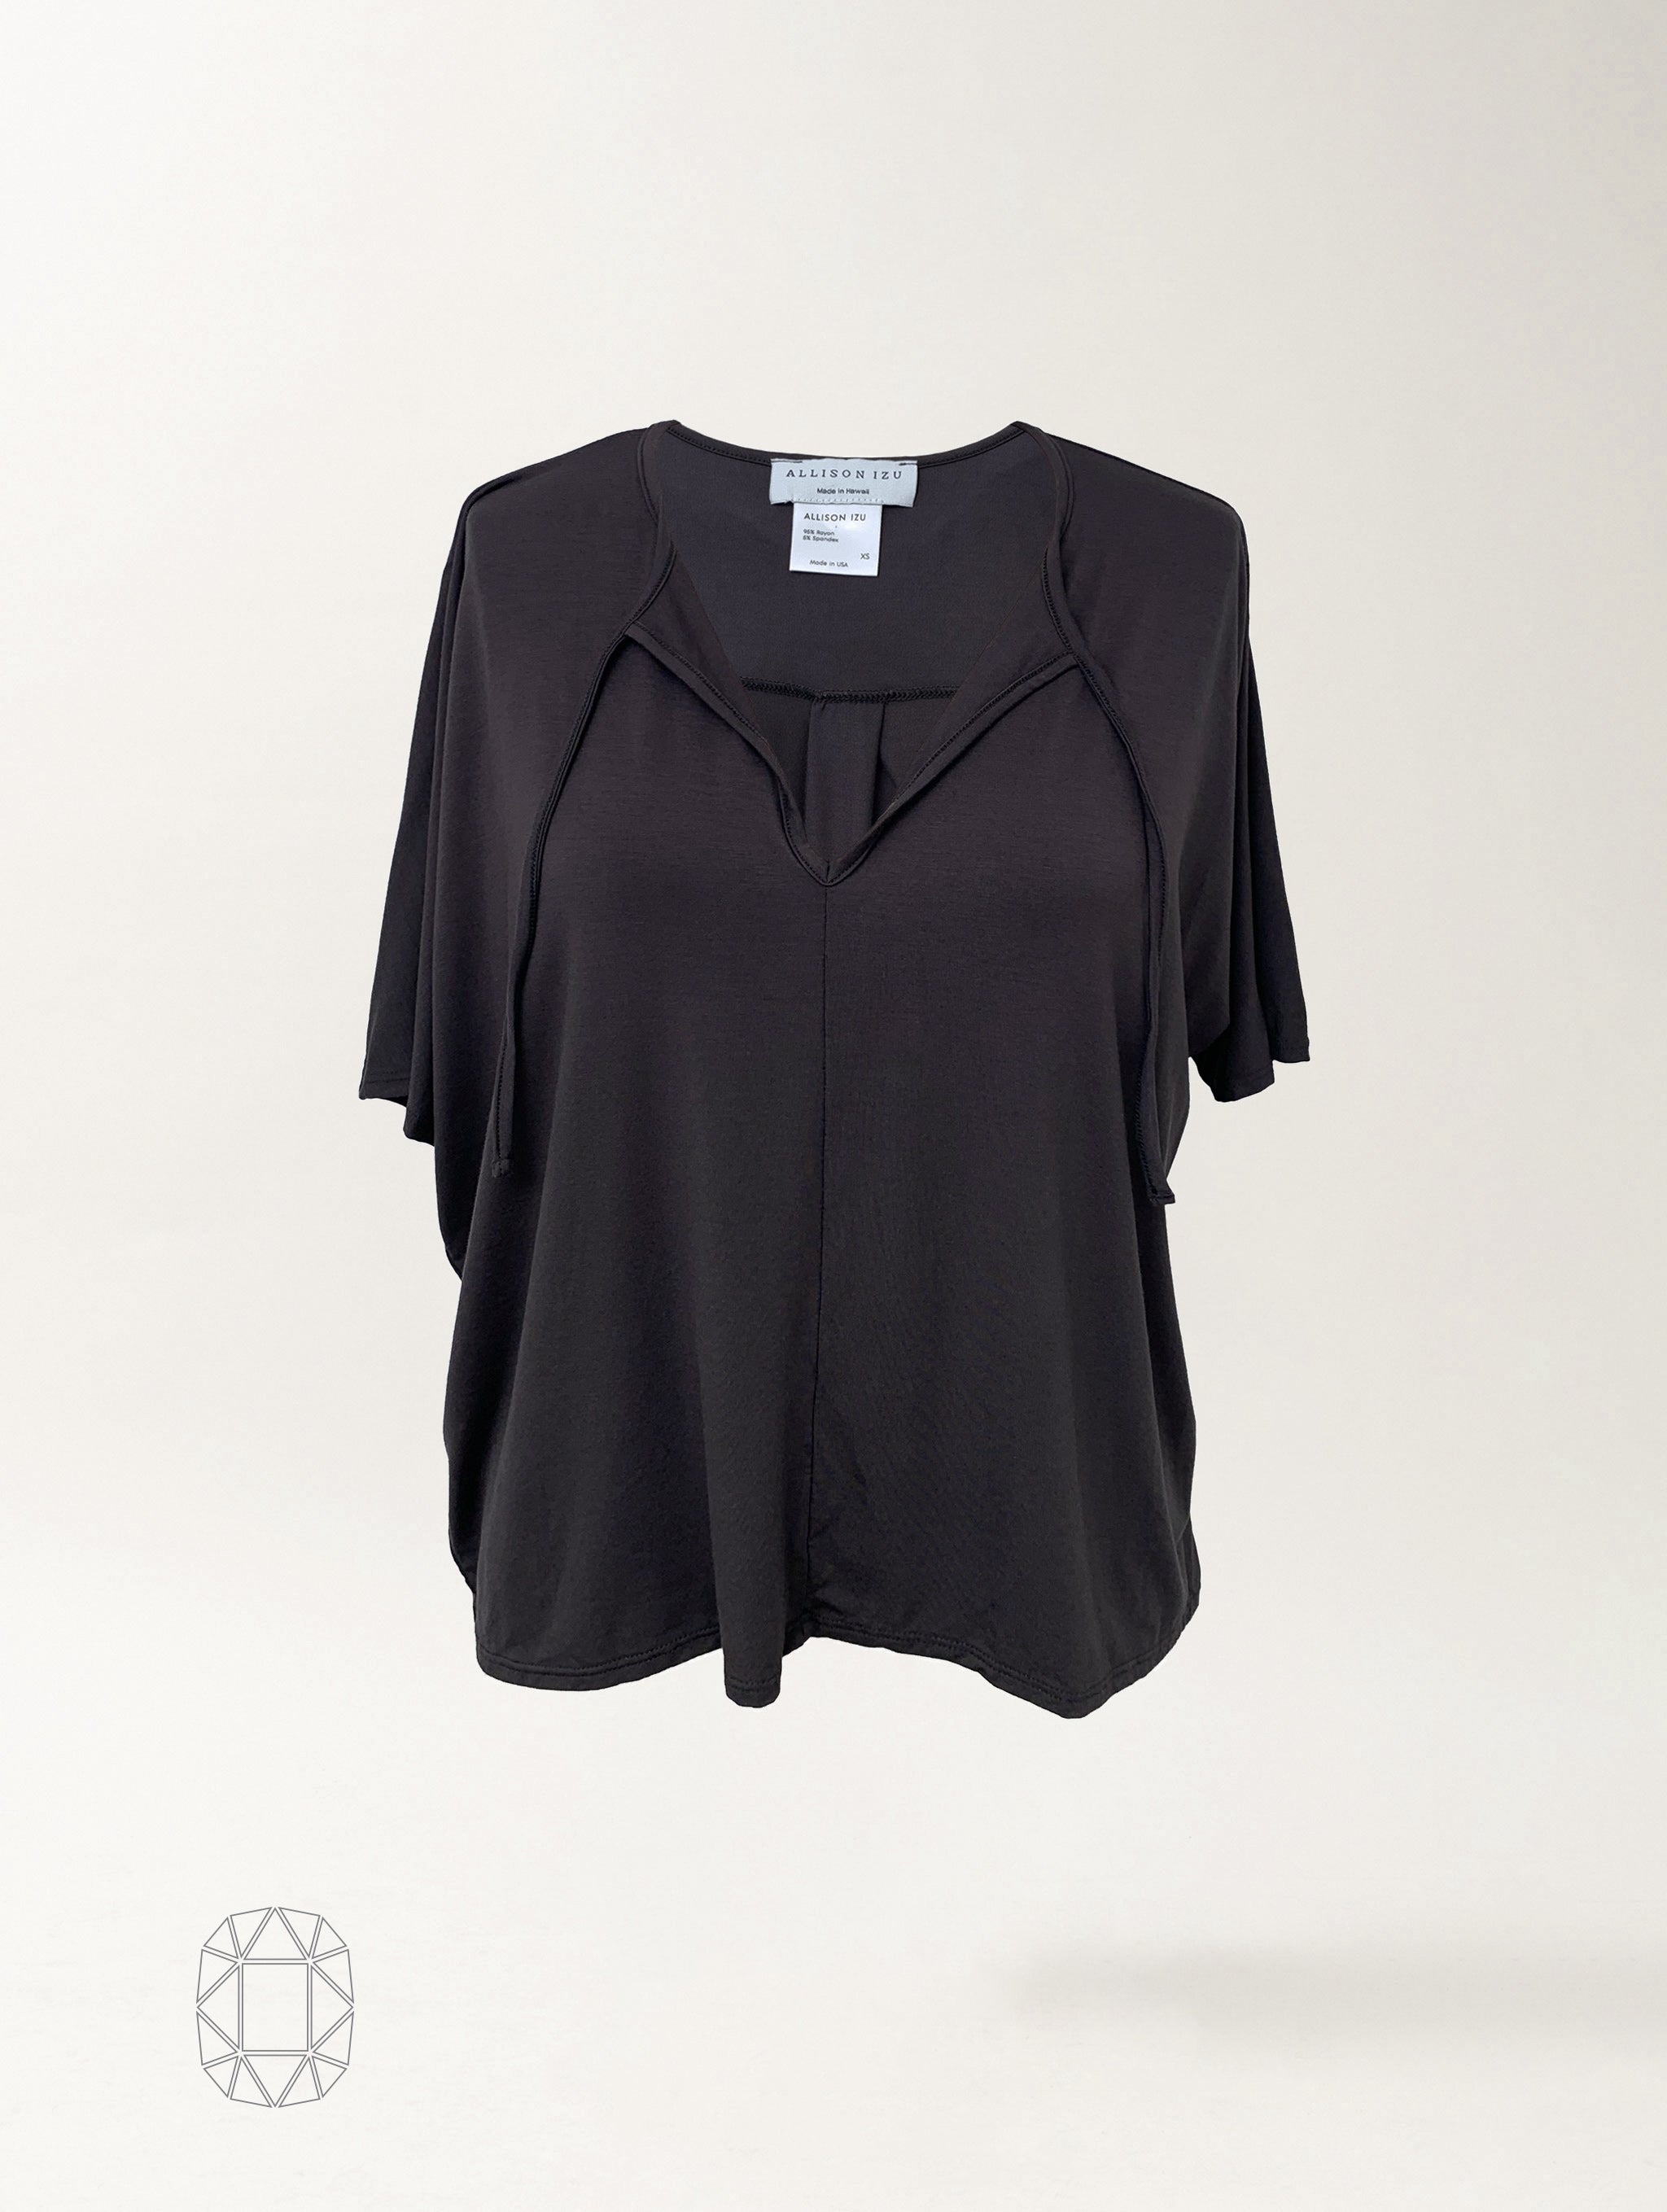 Lara Top - Washed Black Rayon Jersey